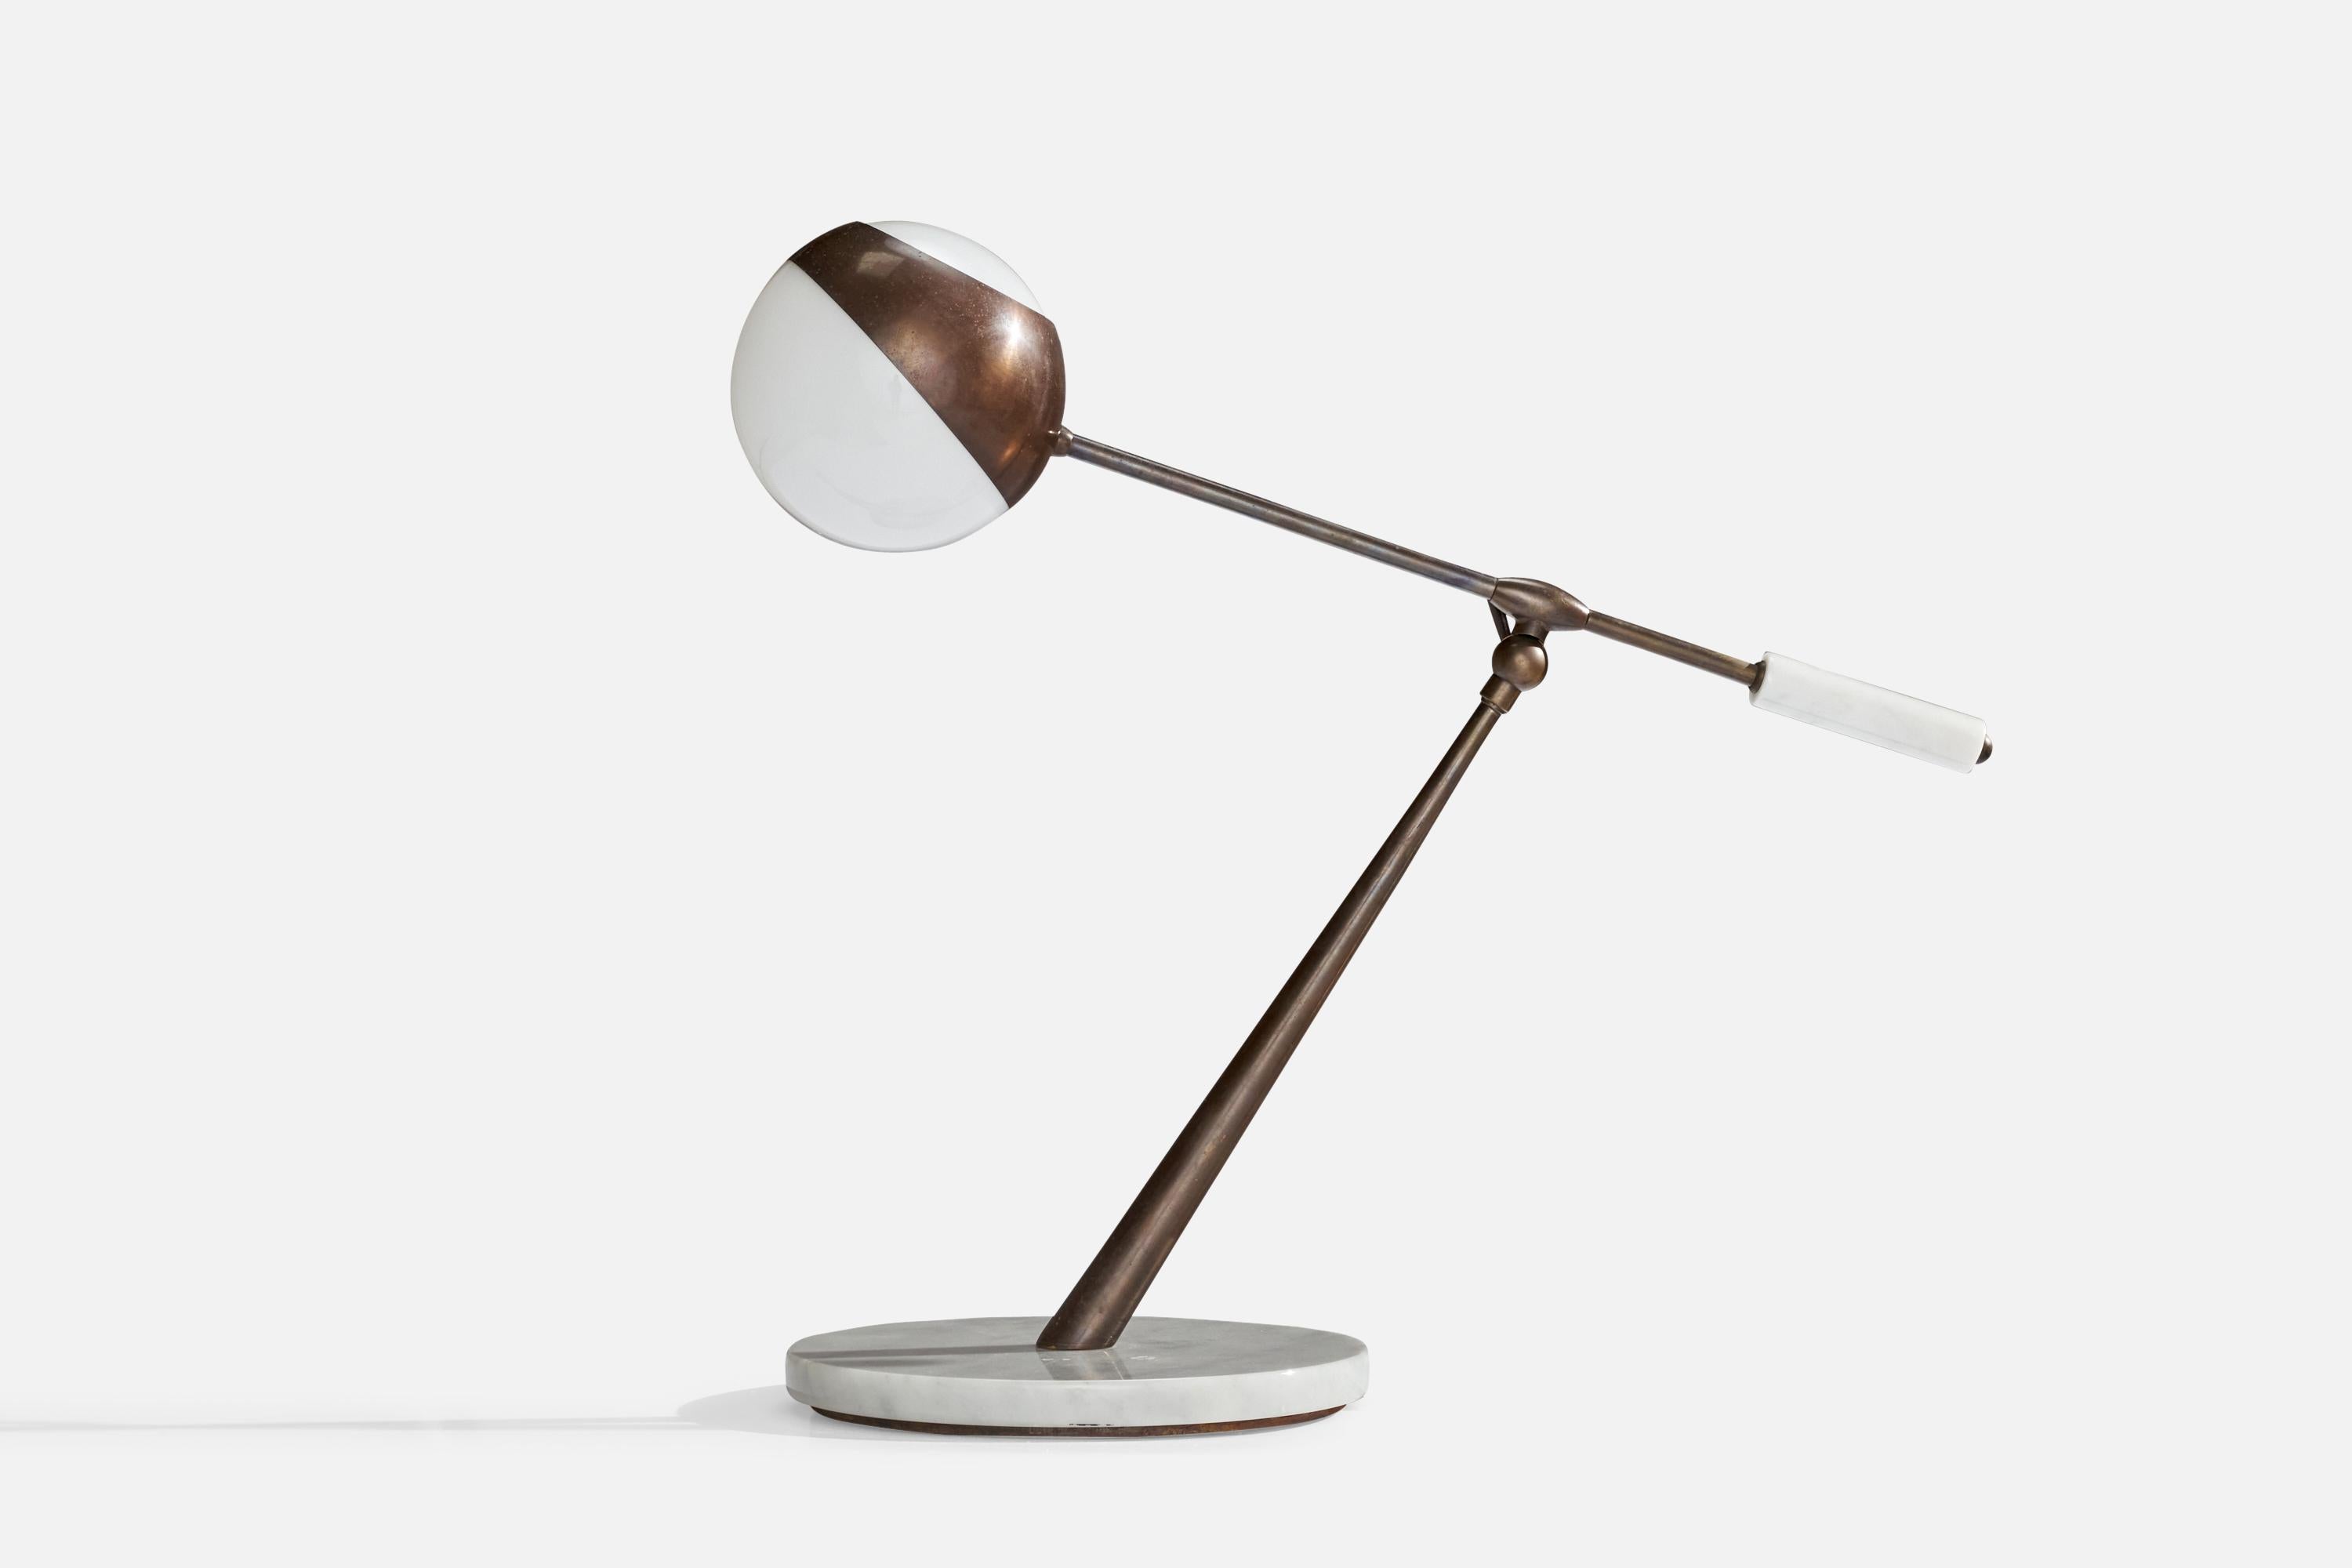 Lampe de table réglable en cuivre, mable et verre opalin, conçue et produite en Italie, années 1960.

Dimensions globales (pouces) : 20